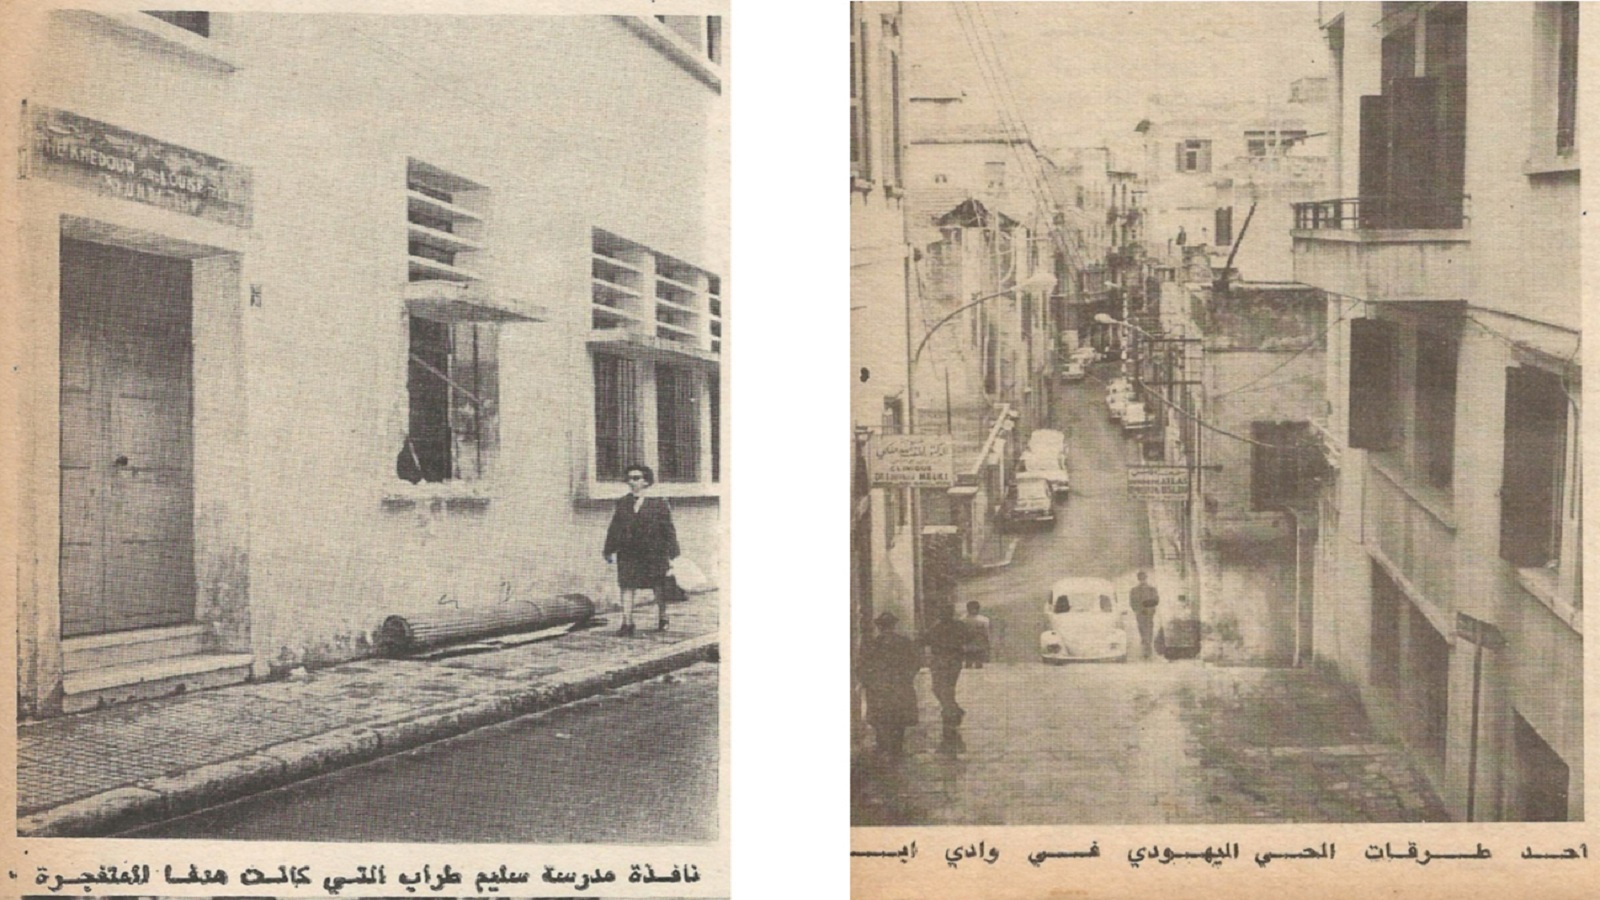 يهود لبنان قبل جريمة "سليم طراب"